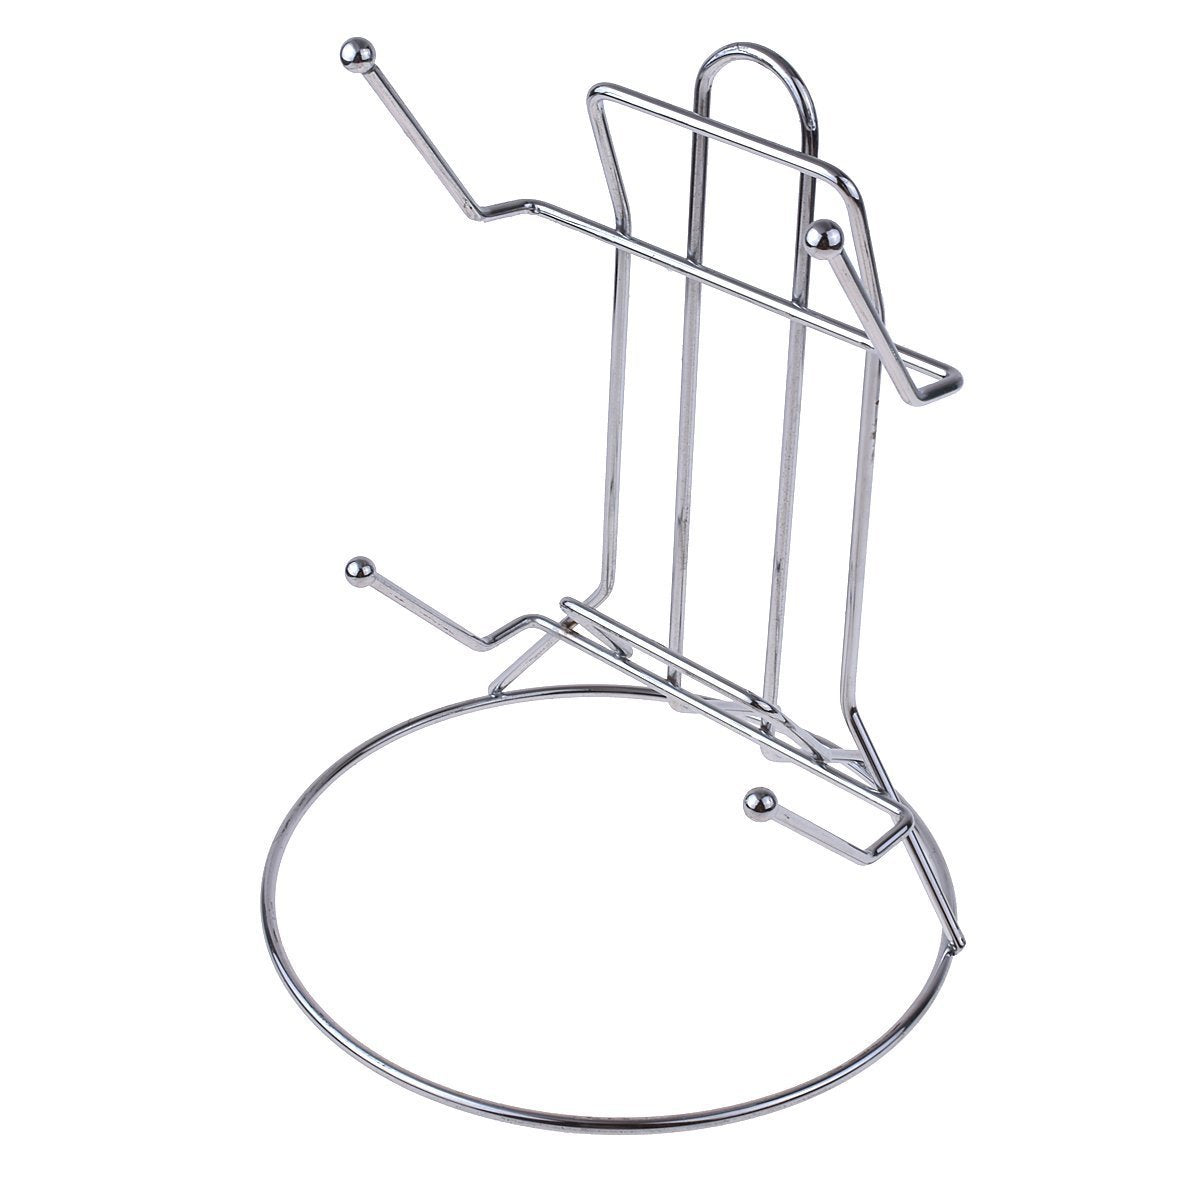 Budget kmise stainless steel kitchen shelve pot lid frame rack rest holders for home restaurant 4 pcs